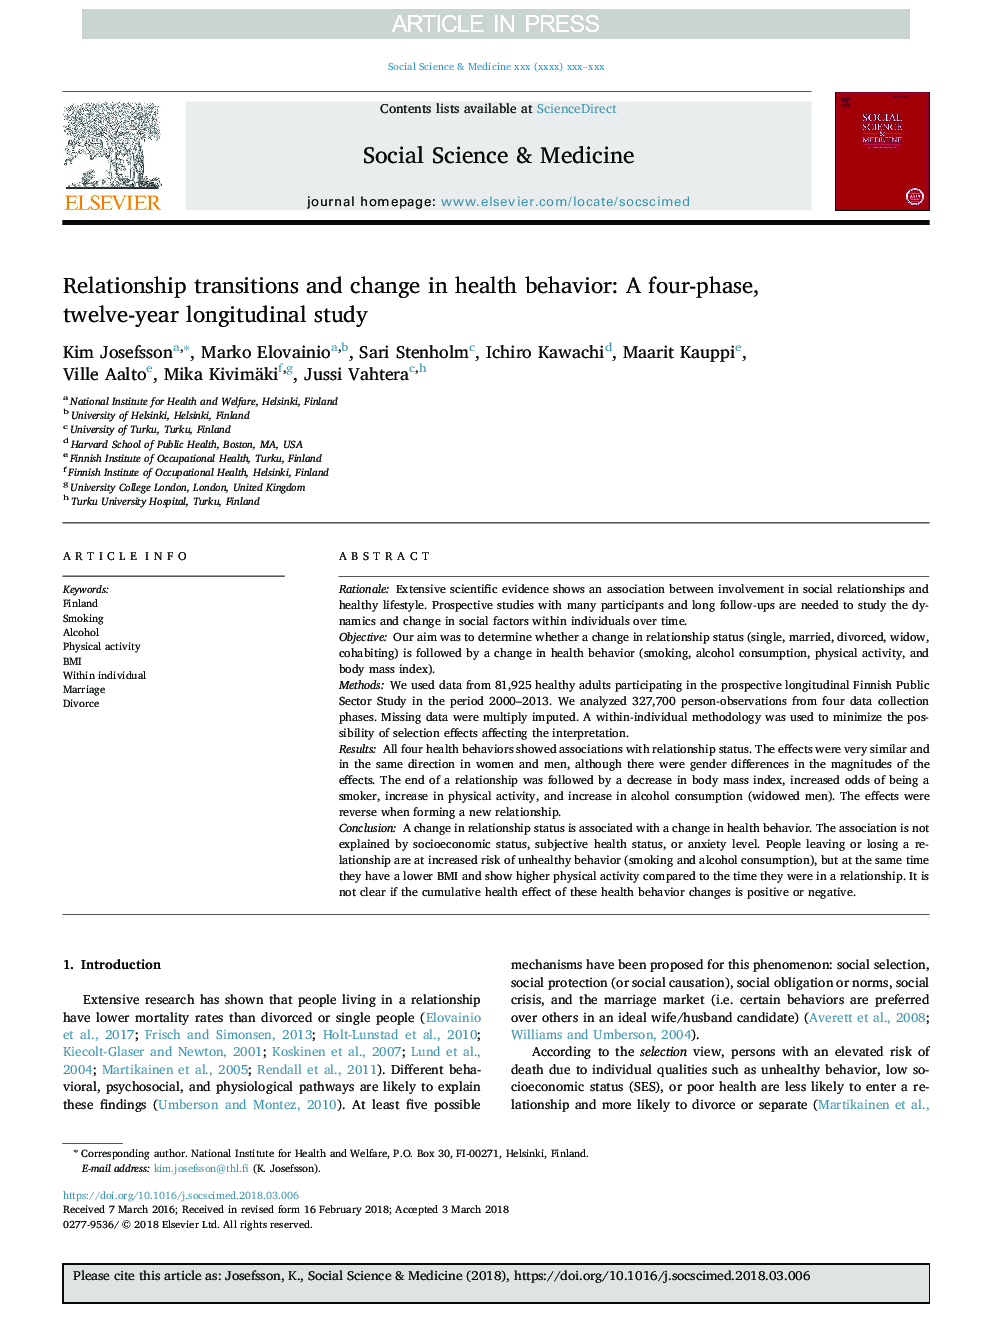 تغییرات رفتاری و تغییر رفتار در سلامت: مطالعه طولی چهار مرحلهای، دوازده ساله 